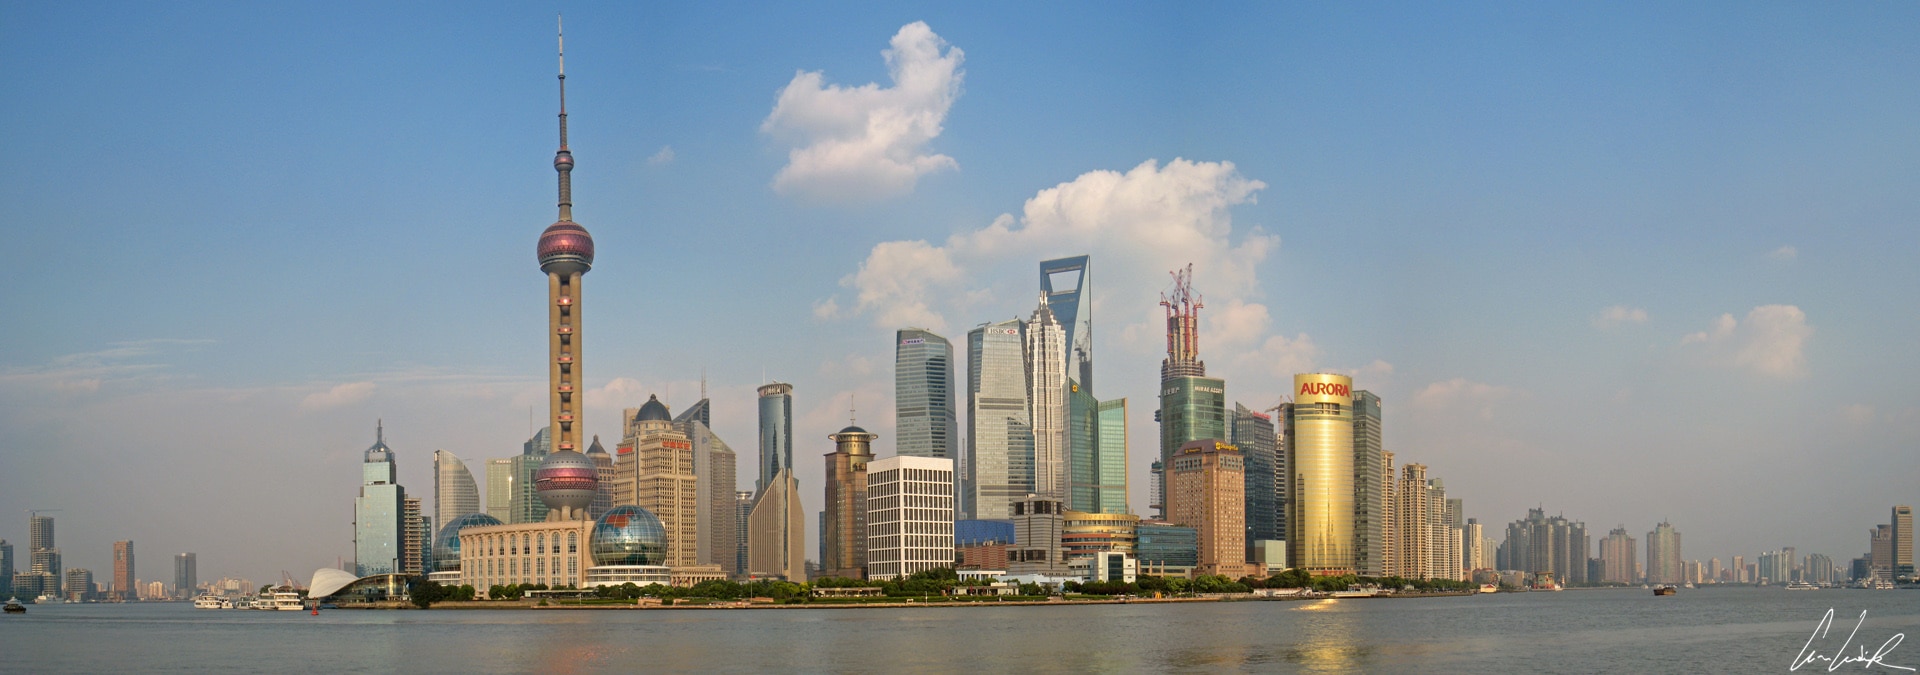 Ville de Pudong en Chine